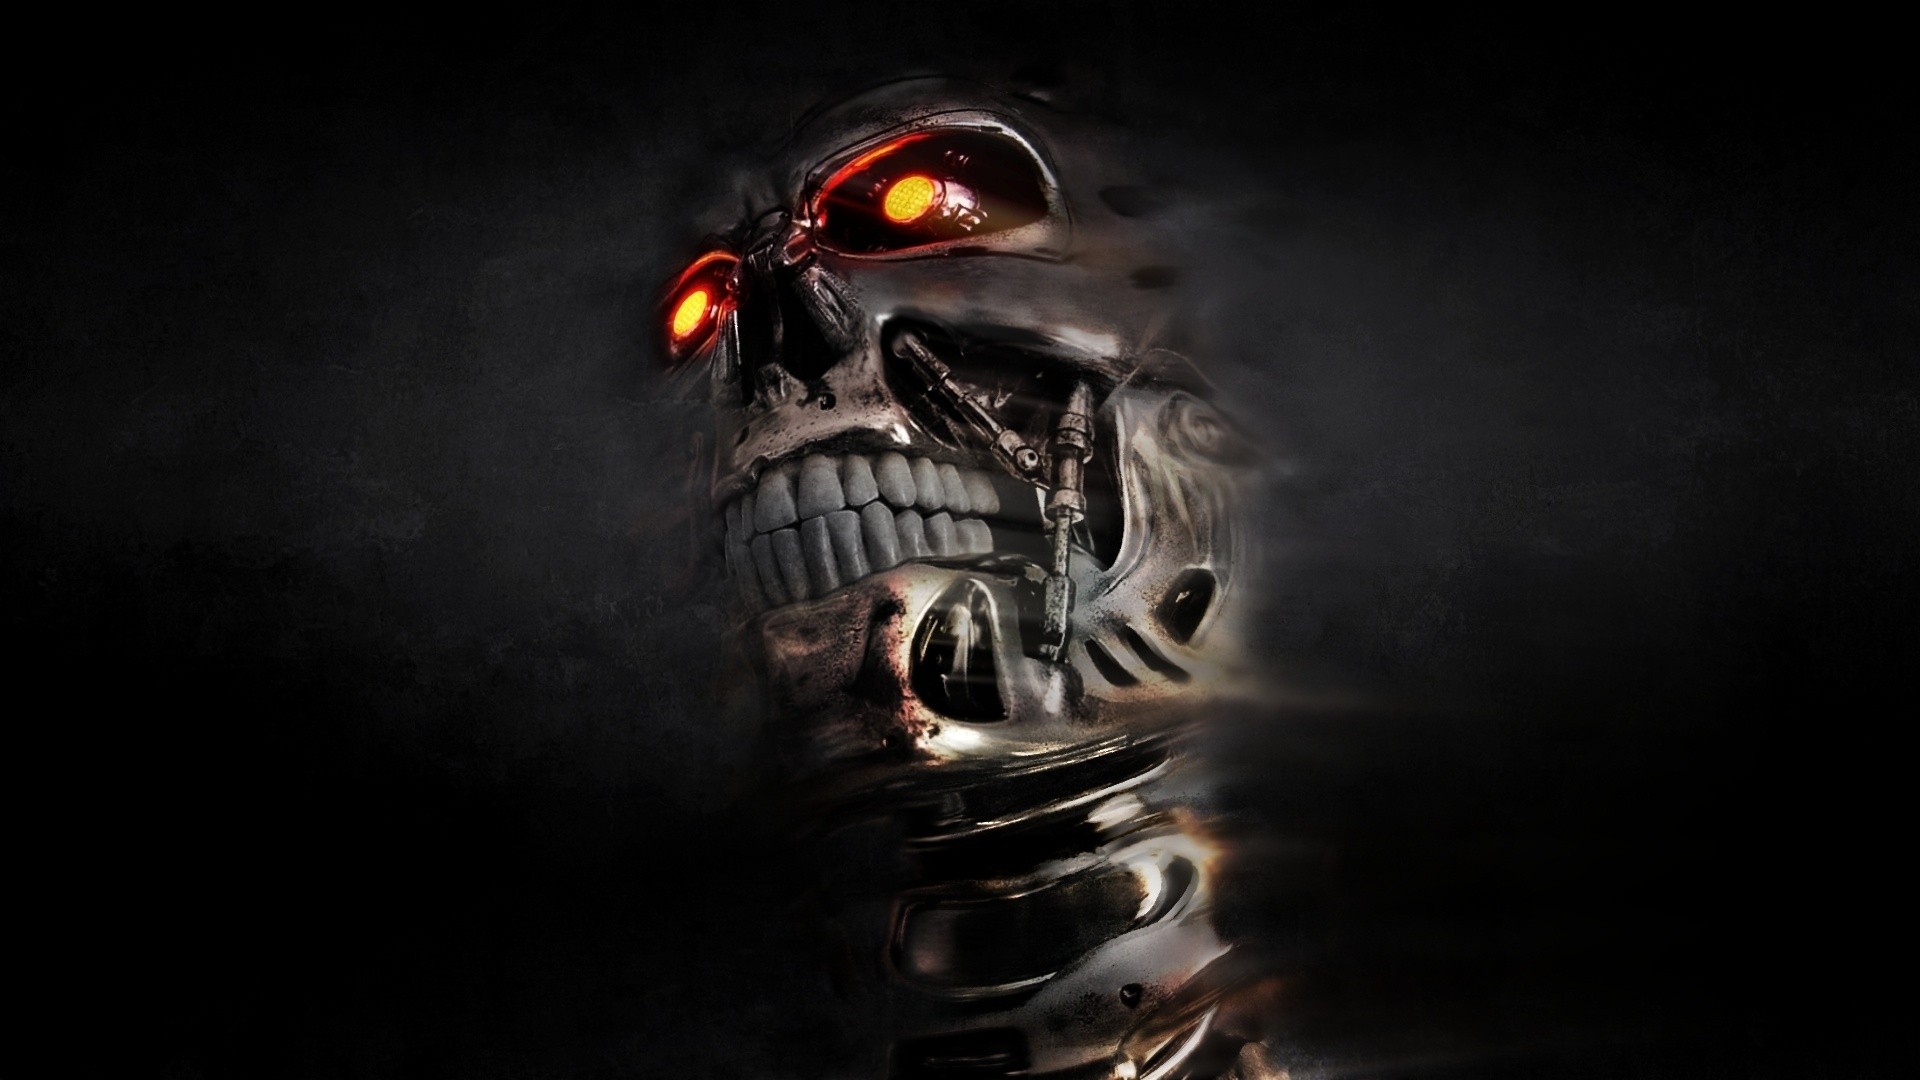 T 800 Terminator Skull Endoskeleton Terminator Digital Art Cyborg Endoskeleton Movies Machine Machin 1920x1080